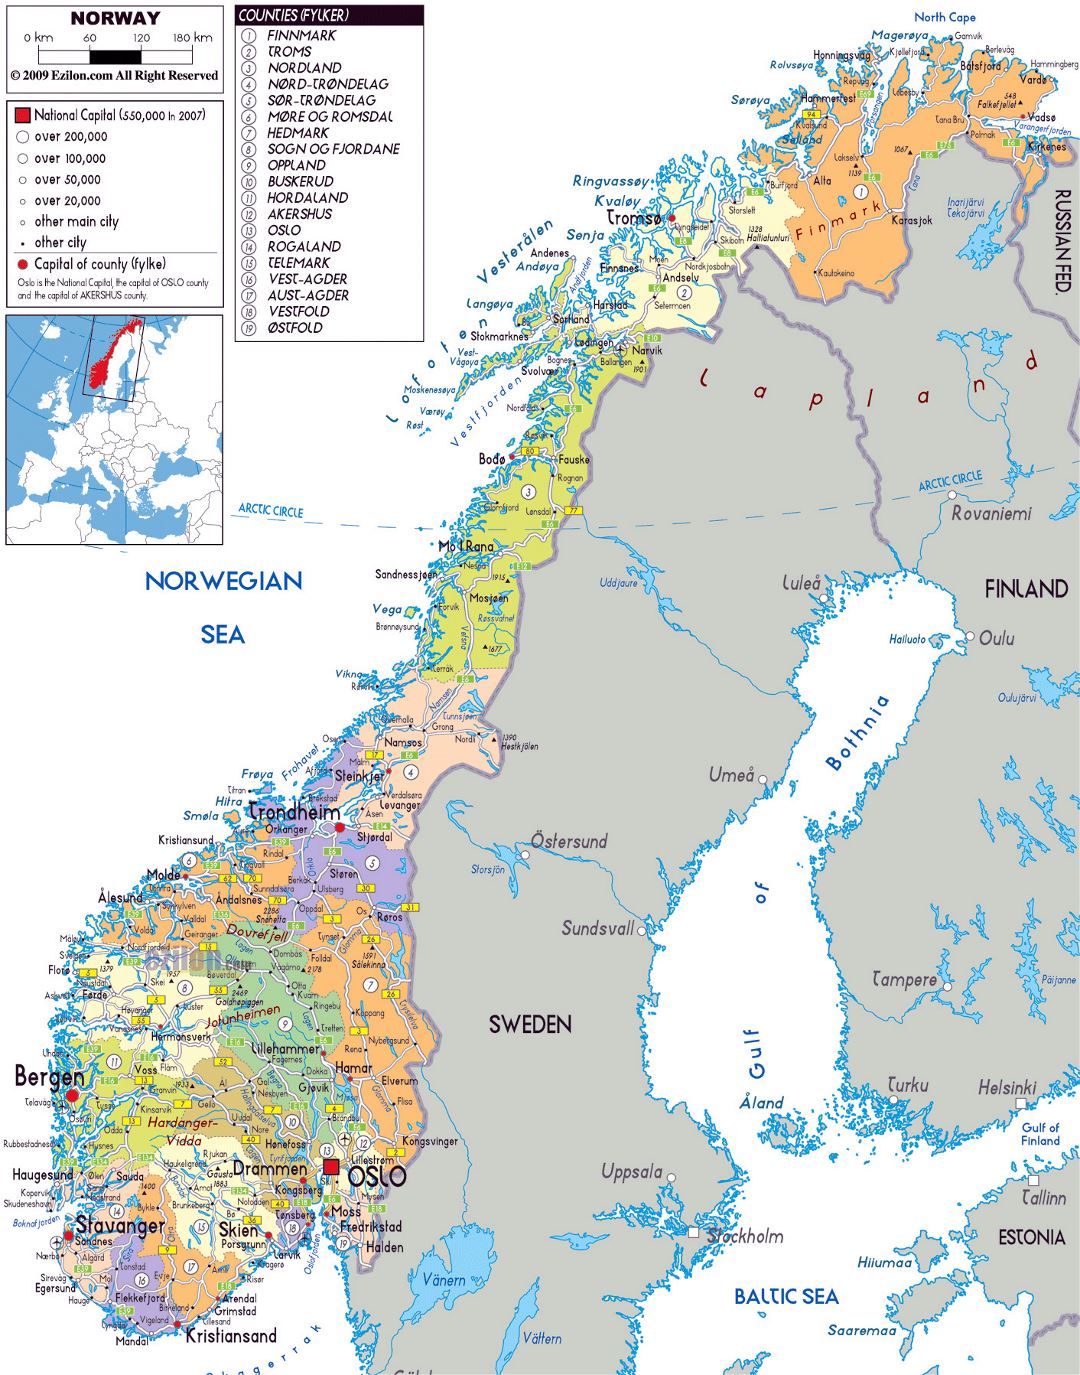 Grande mapa político y administrativo de Noruega con carreteras, ciudades y aeropuertos